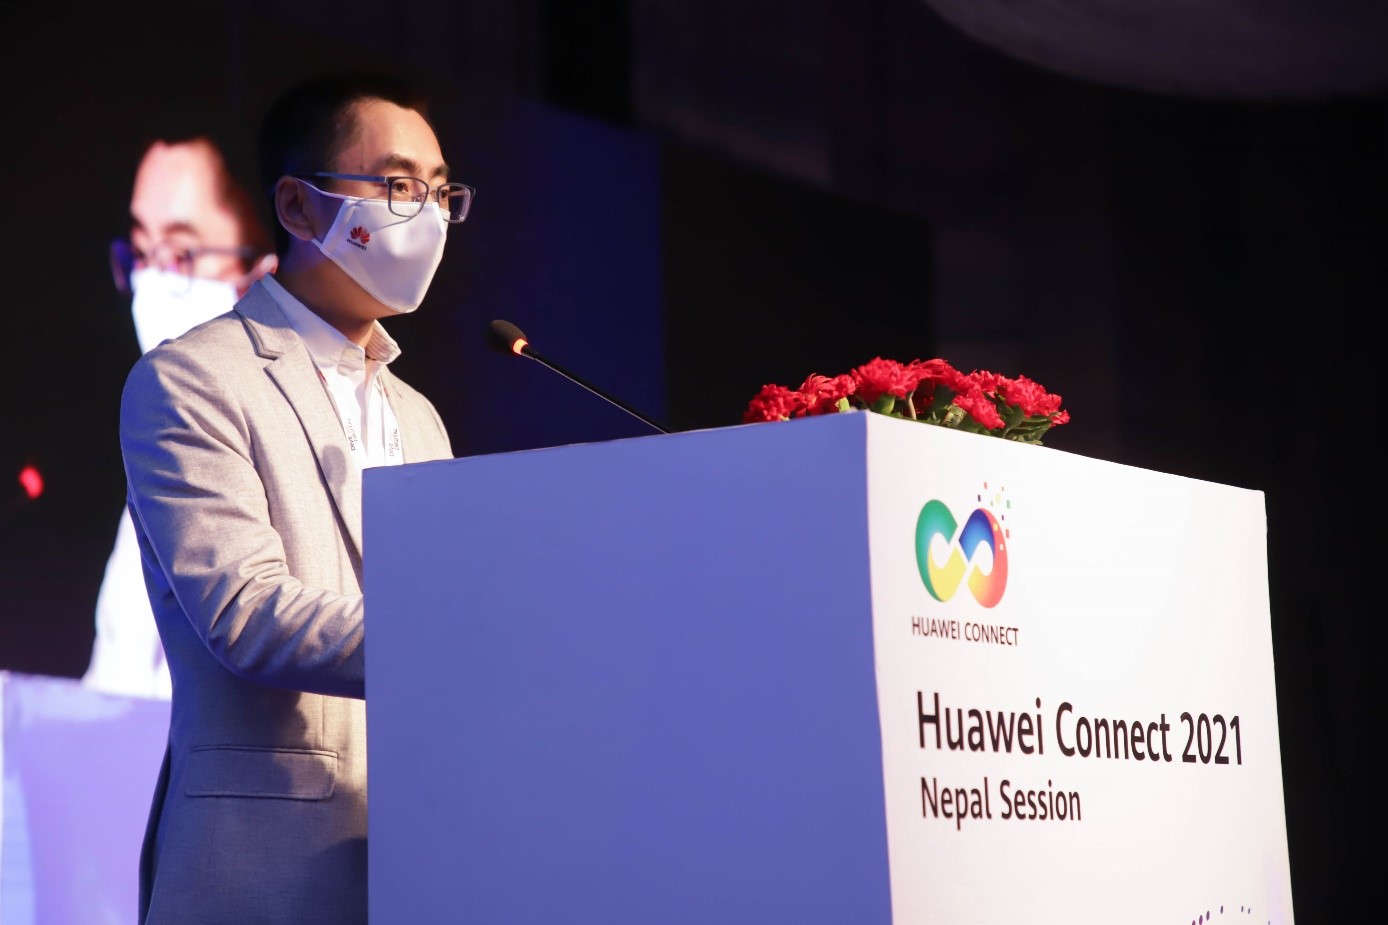 Huawei Connect 2021 Nepal session Zhang Zhengjun